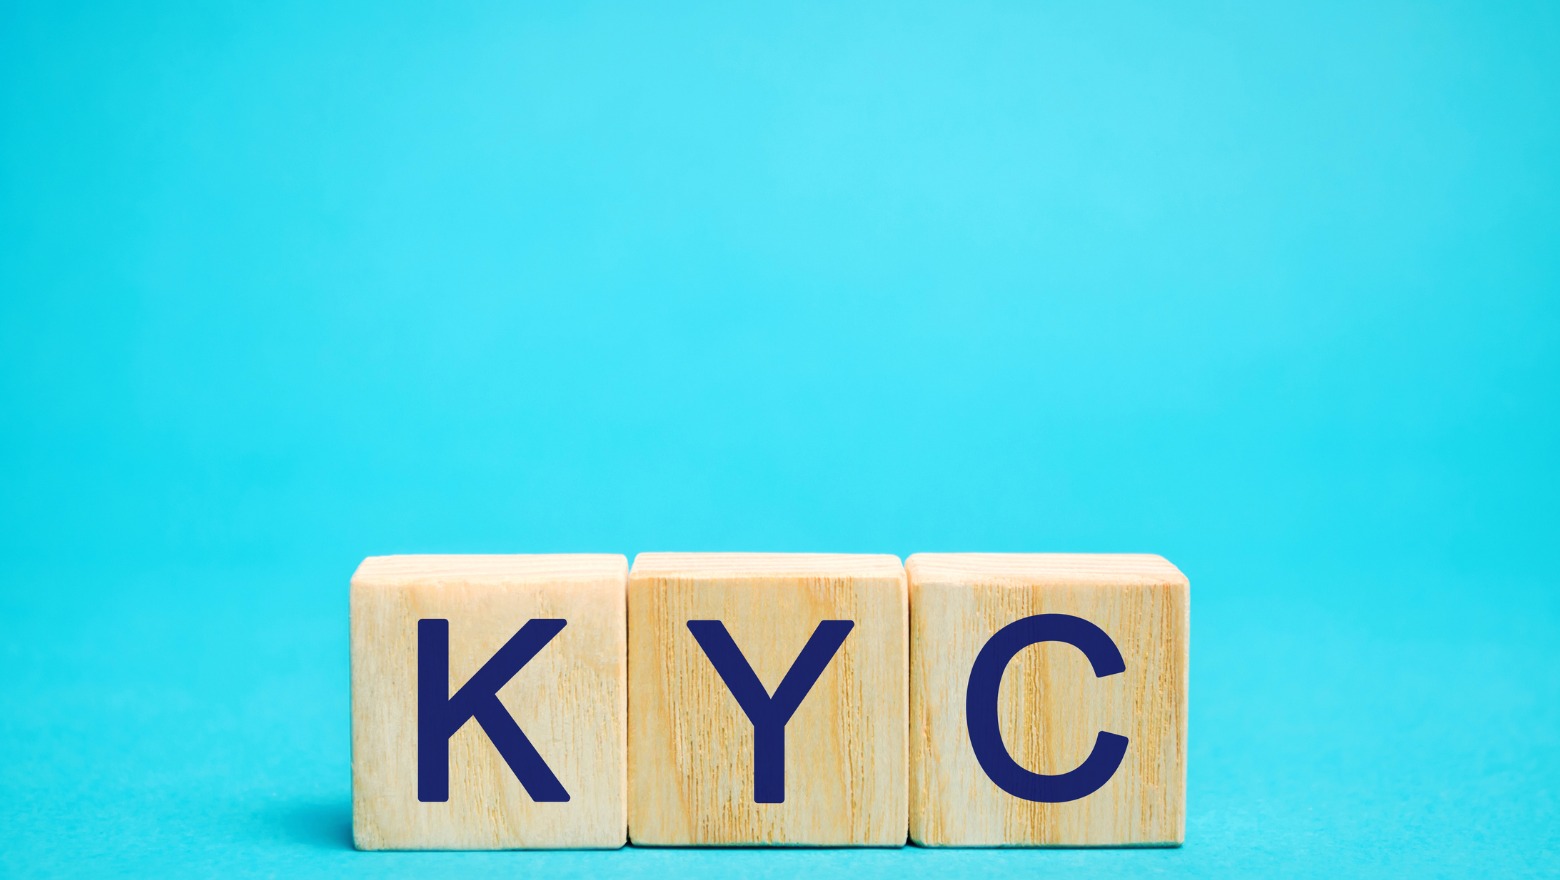 top 10 KYC platforms